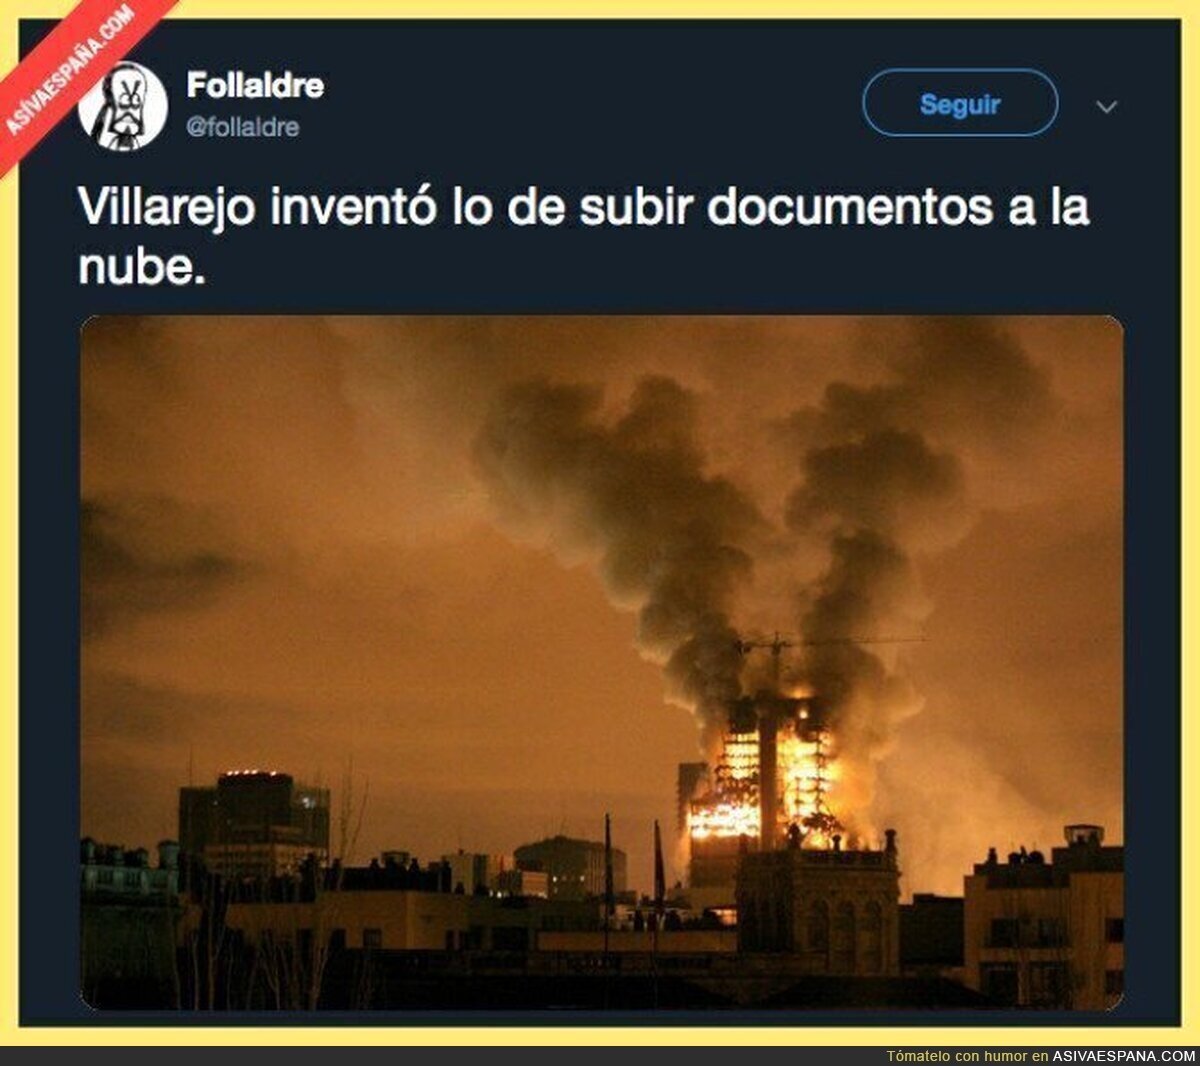 Villarejo es pionero